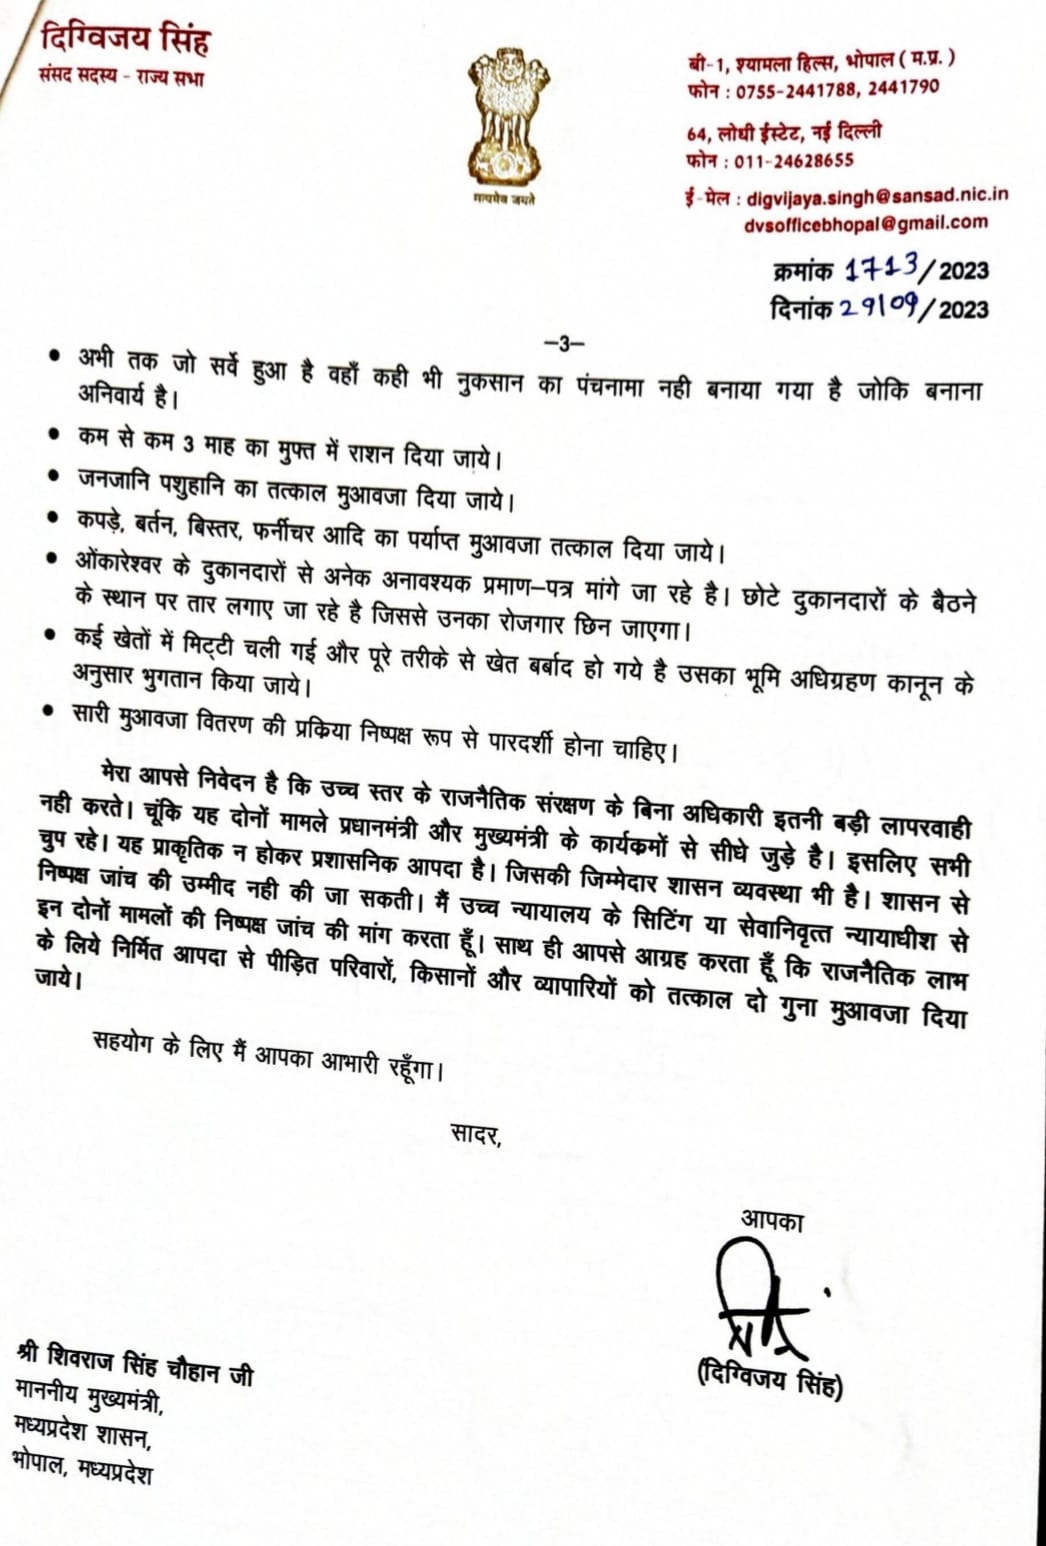 MP News : दिग्विजय सिंह ने सीएम शिवराज को लिखा खुला पत्र, निमाड़ क्षेत्र में हजारों लोगों के घर उजाड़ने के मामले में जांच की मांग